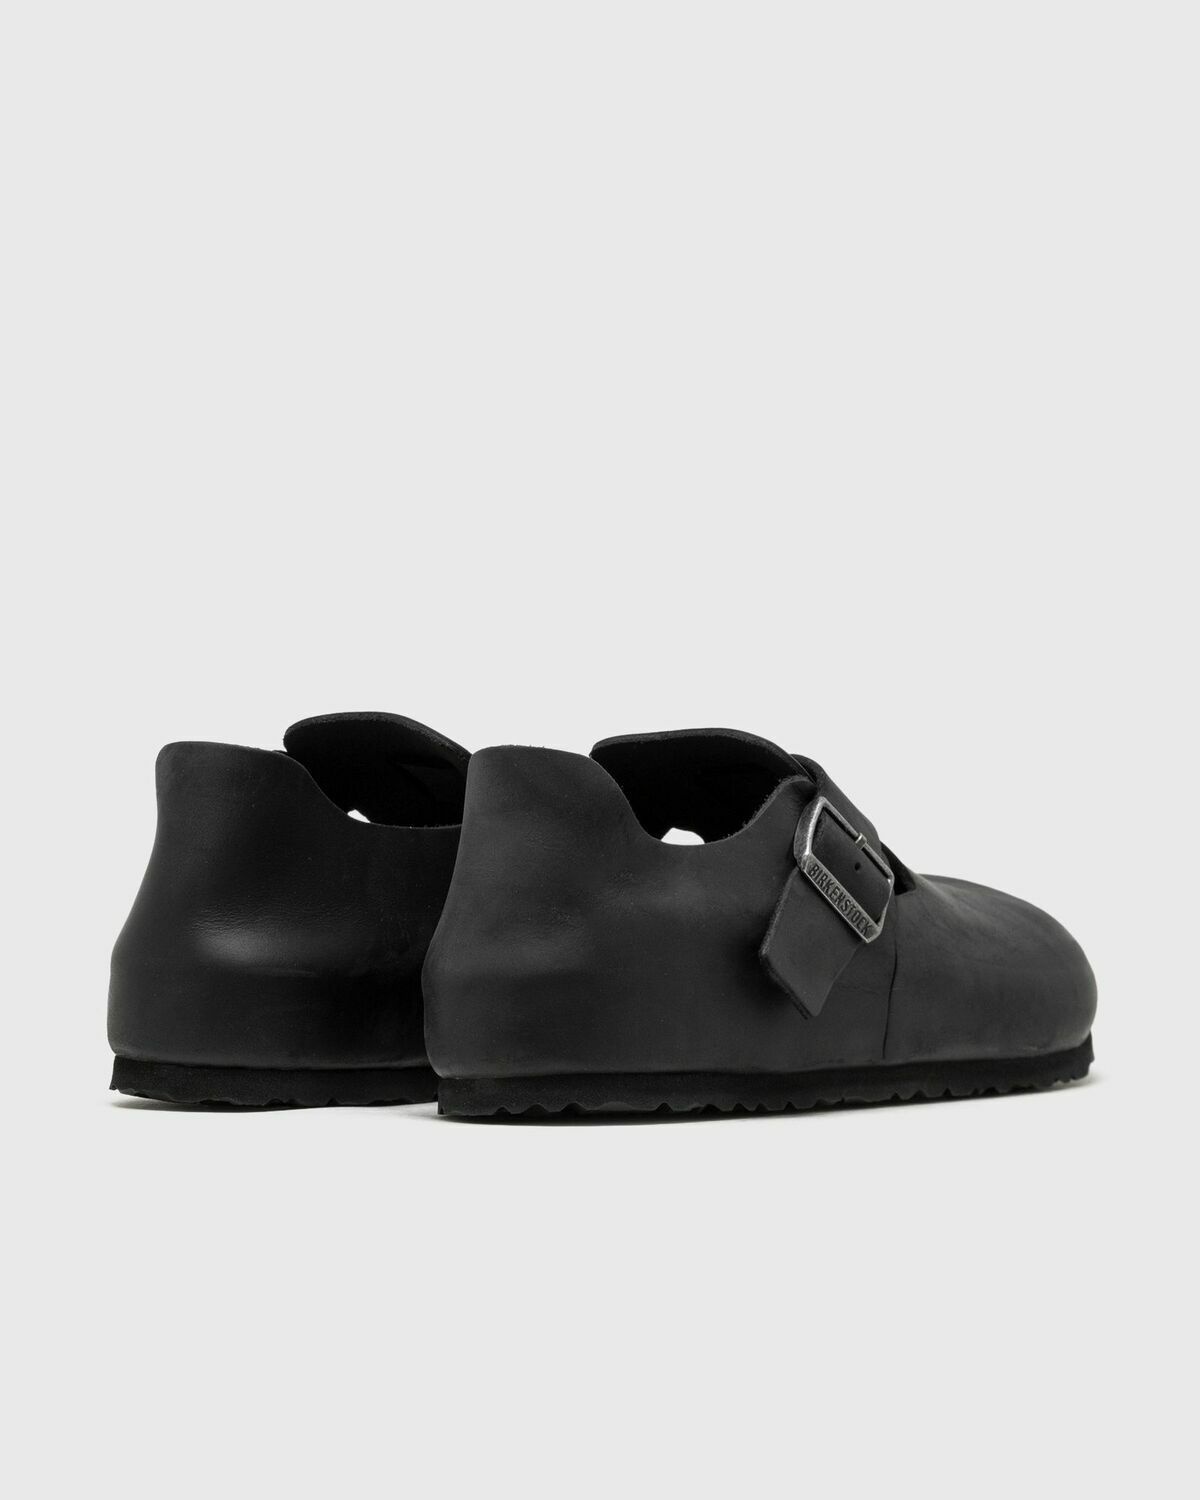 Birkenstock London Oiled Leather Black - Mens - Sandals & Slides ...